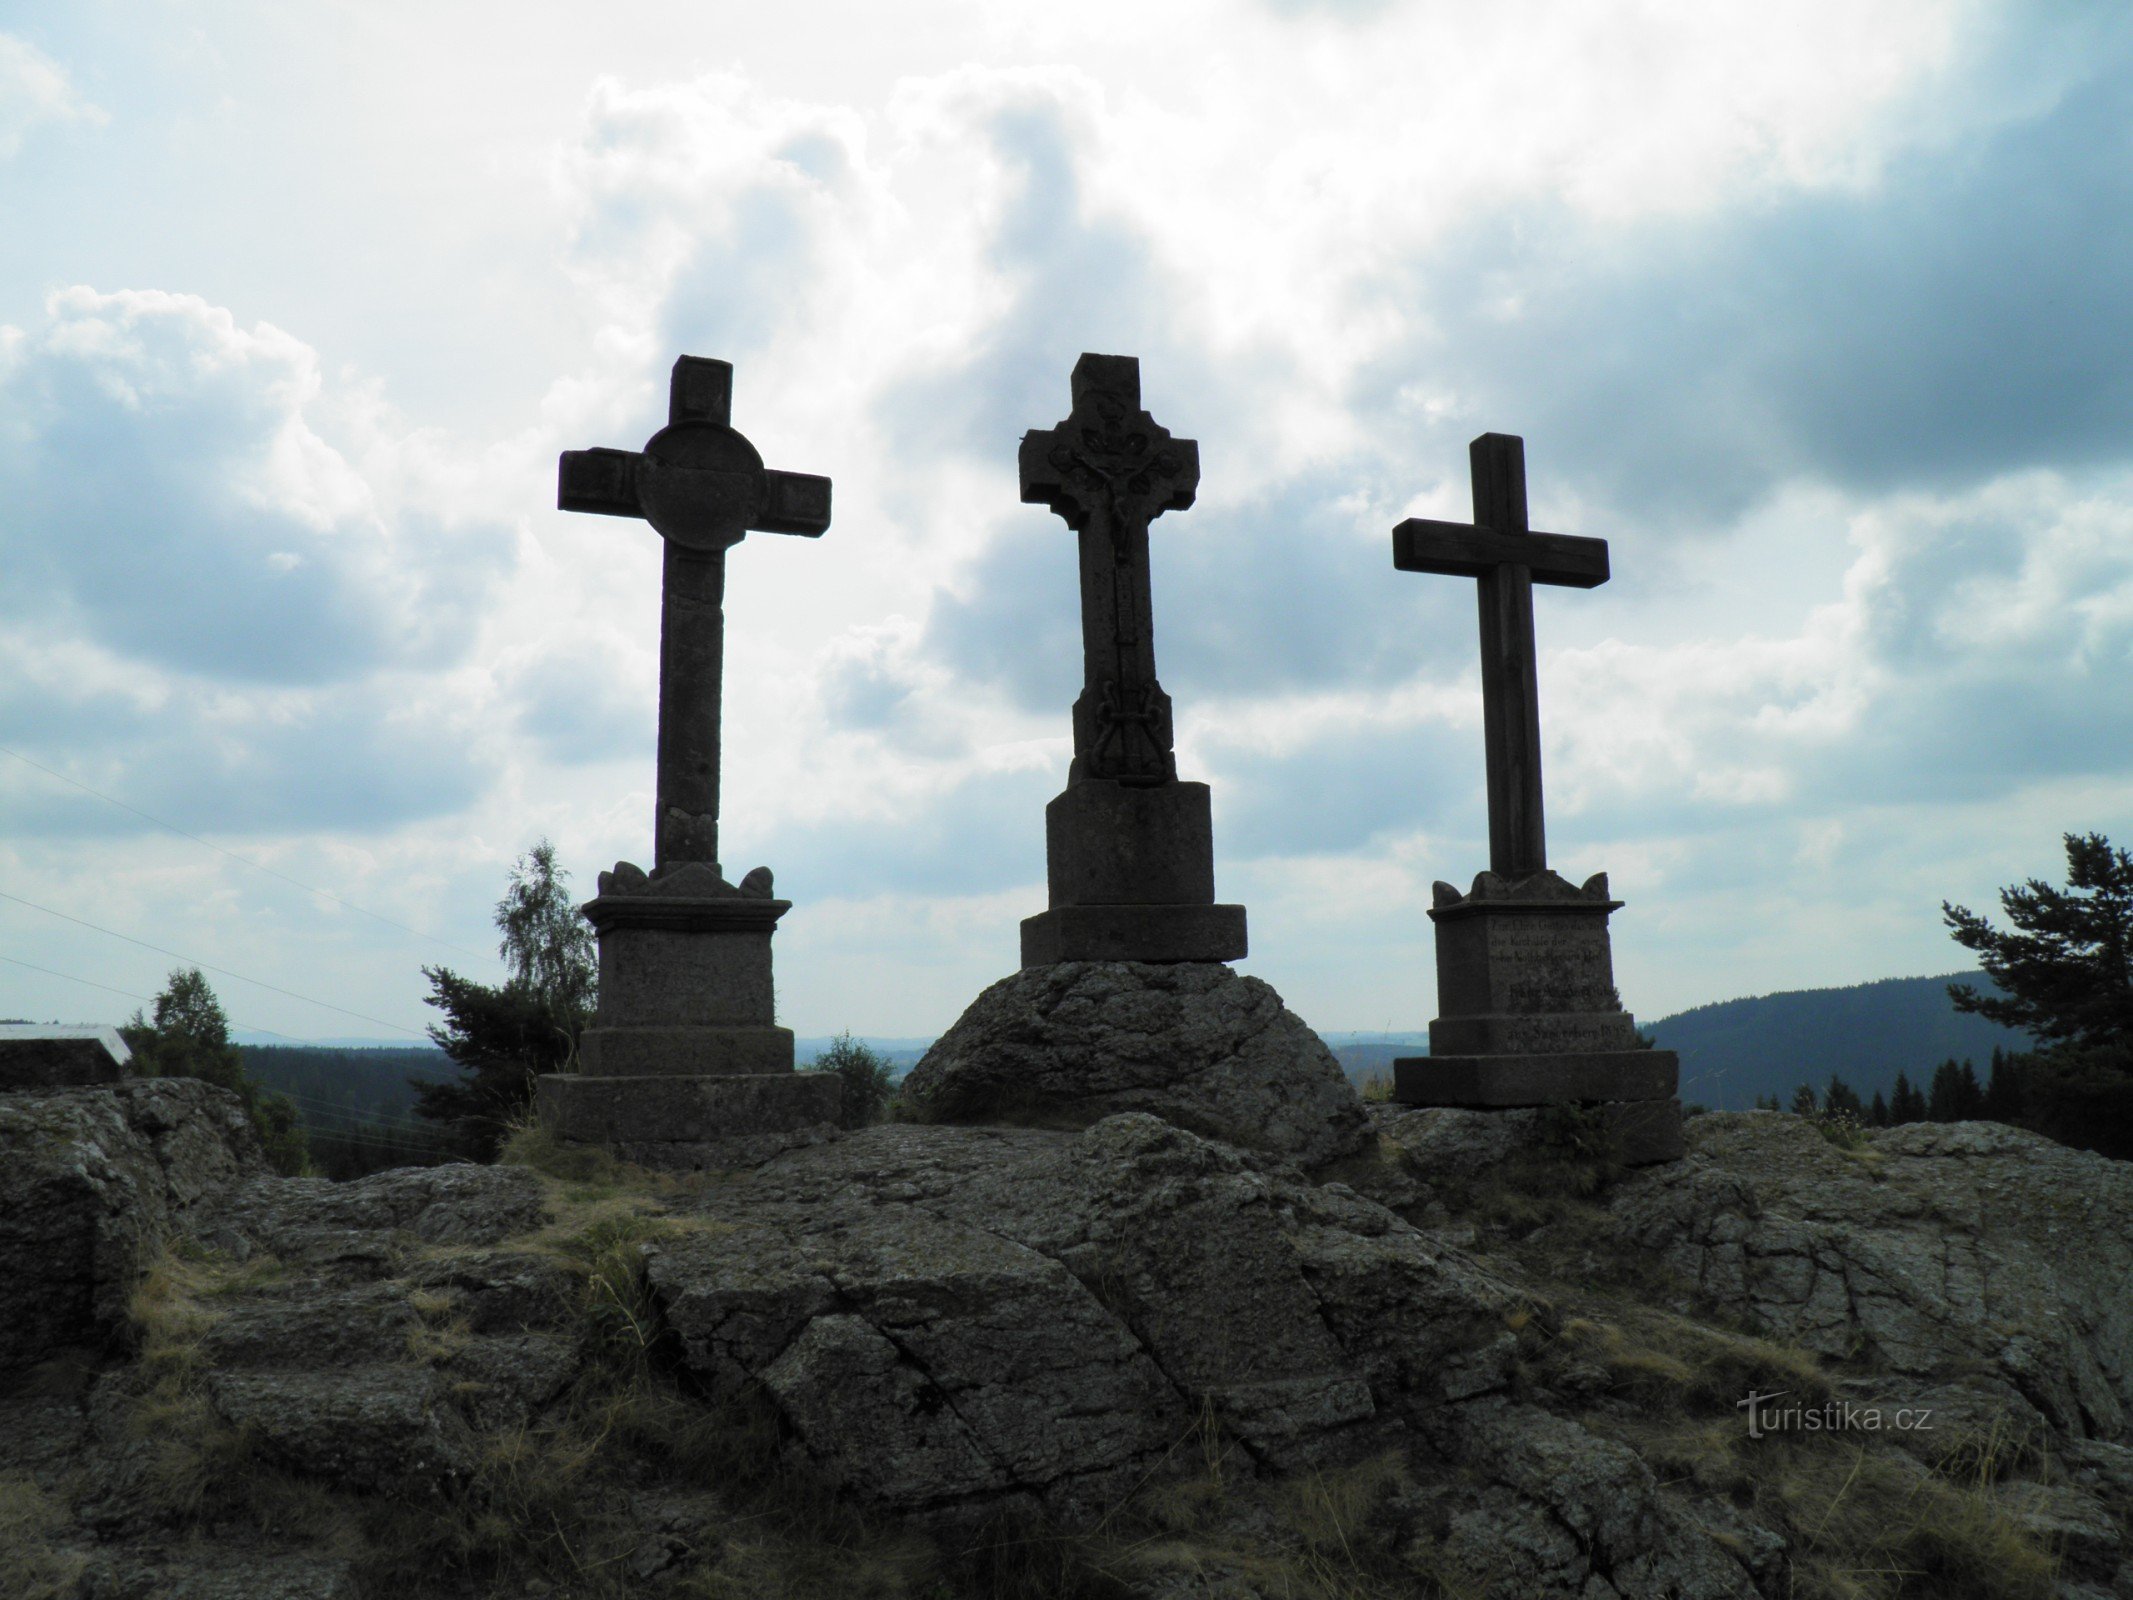 Três cruzes perto da aldeia de Prameny.